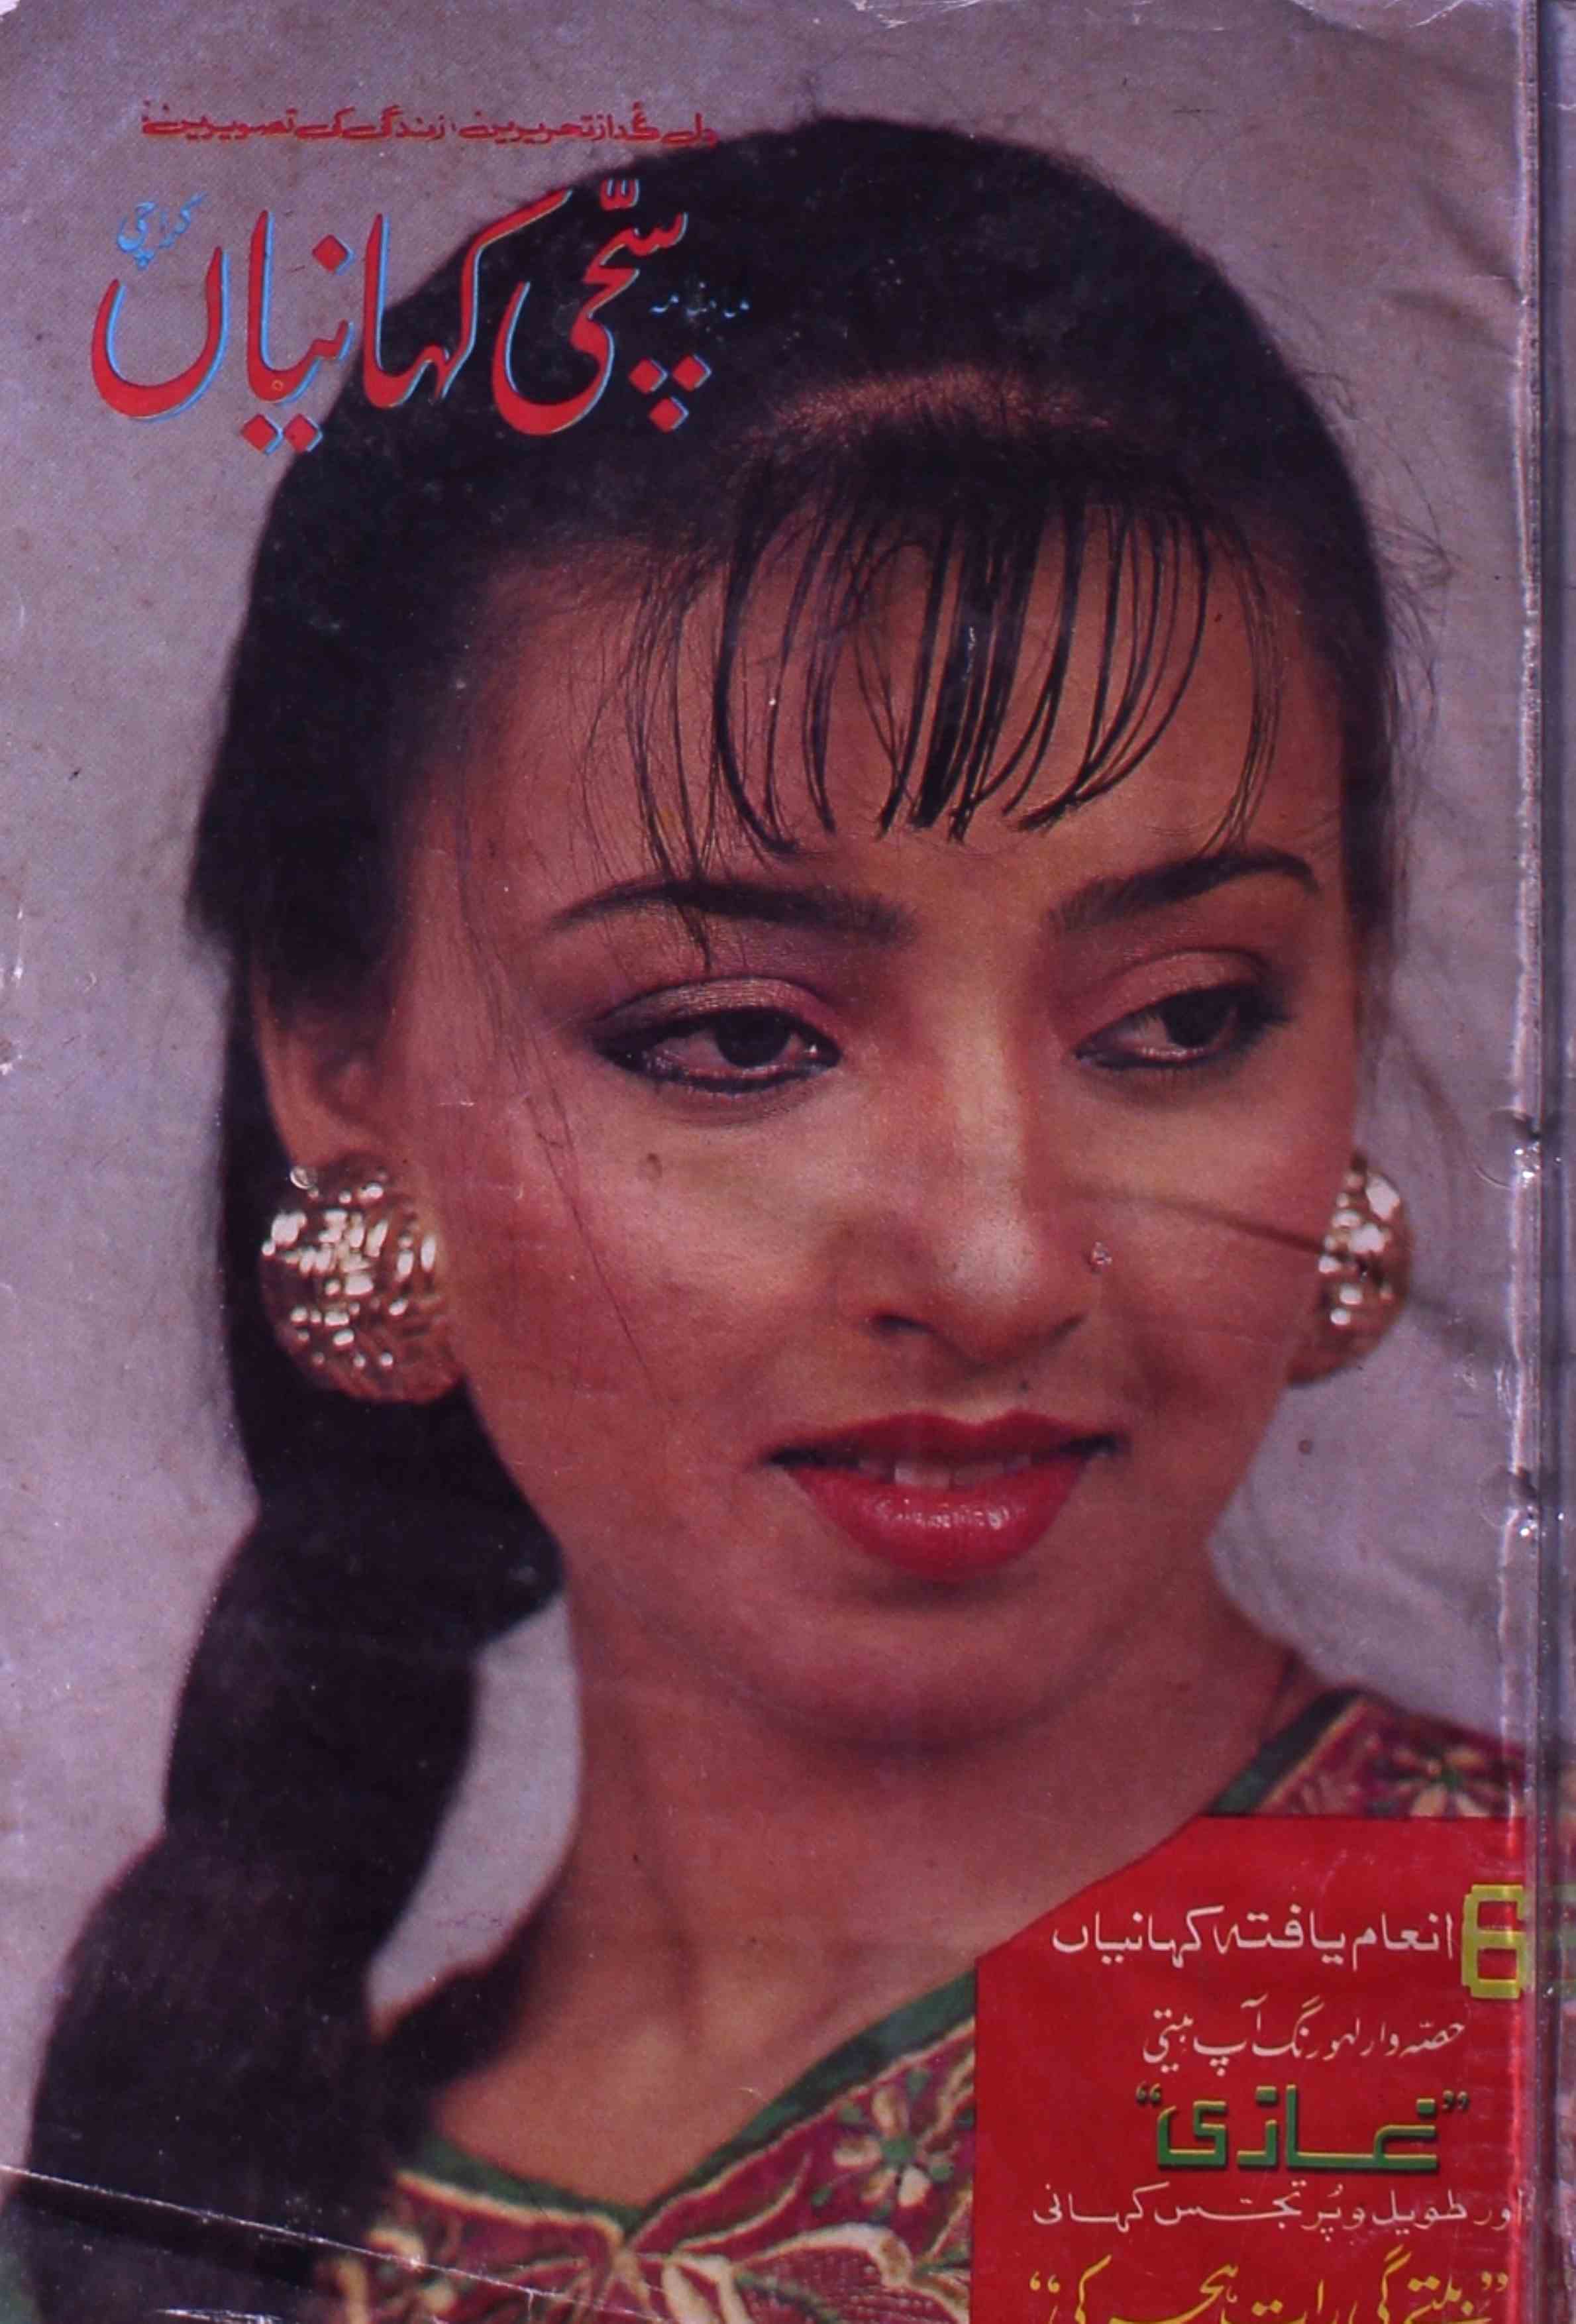 Sacchi Kahaniya Jild 8 Shumara 7-8 July-Aug 1992-Shumara Number-007, 008